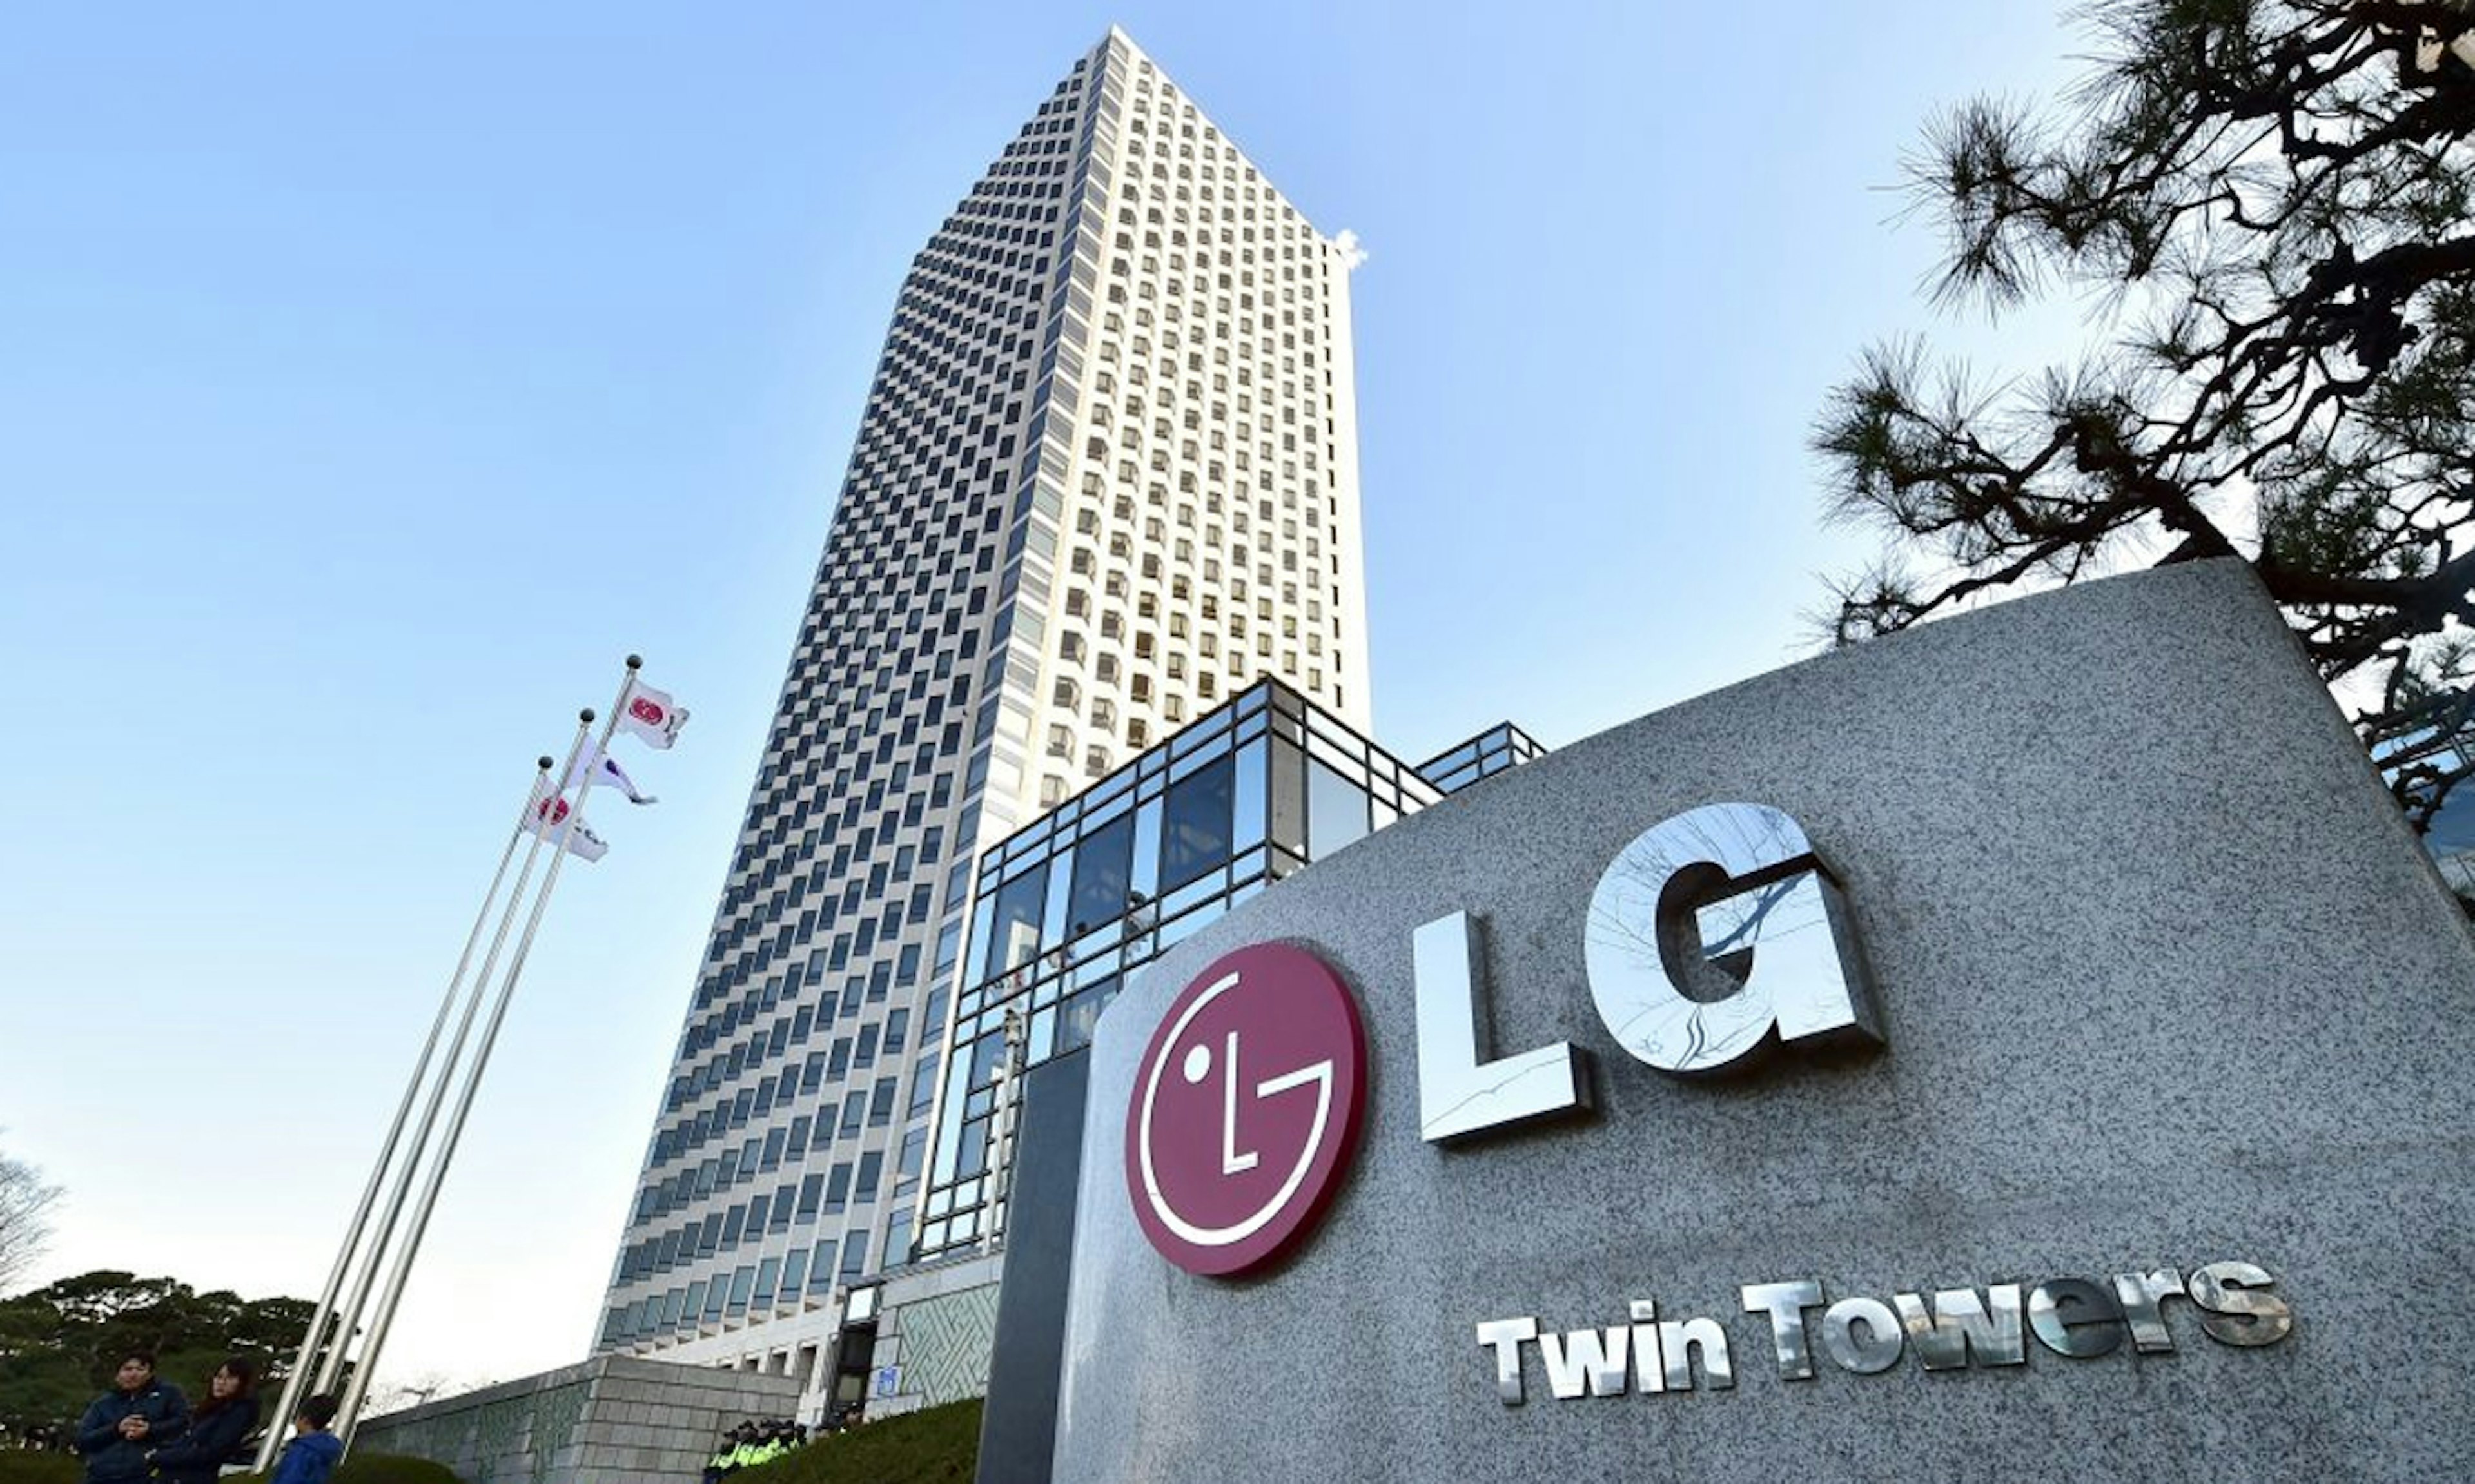 LG Twin Towers - LG's hoofdkantoor in het Zuid-Koreaanse Yeouido.